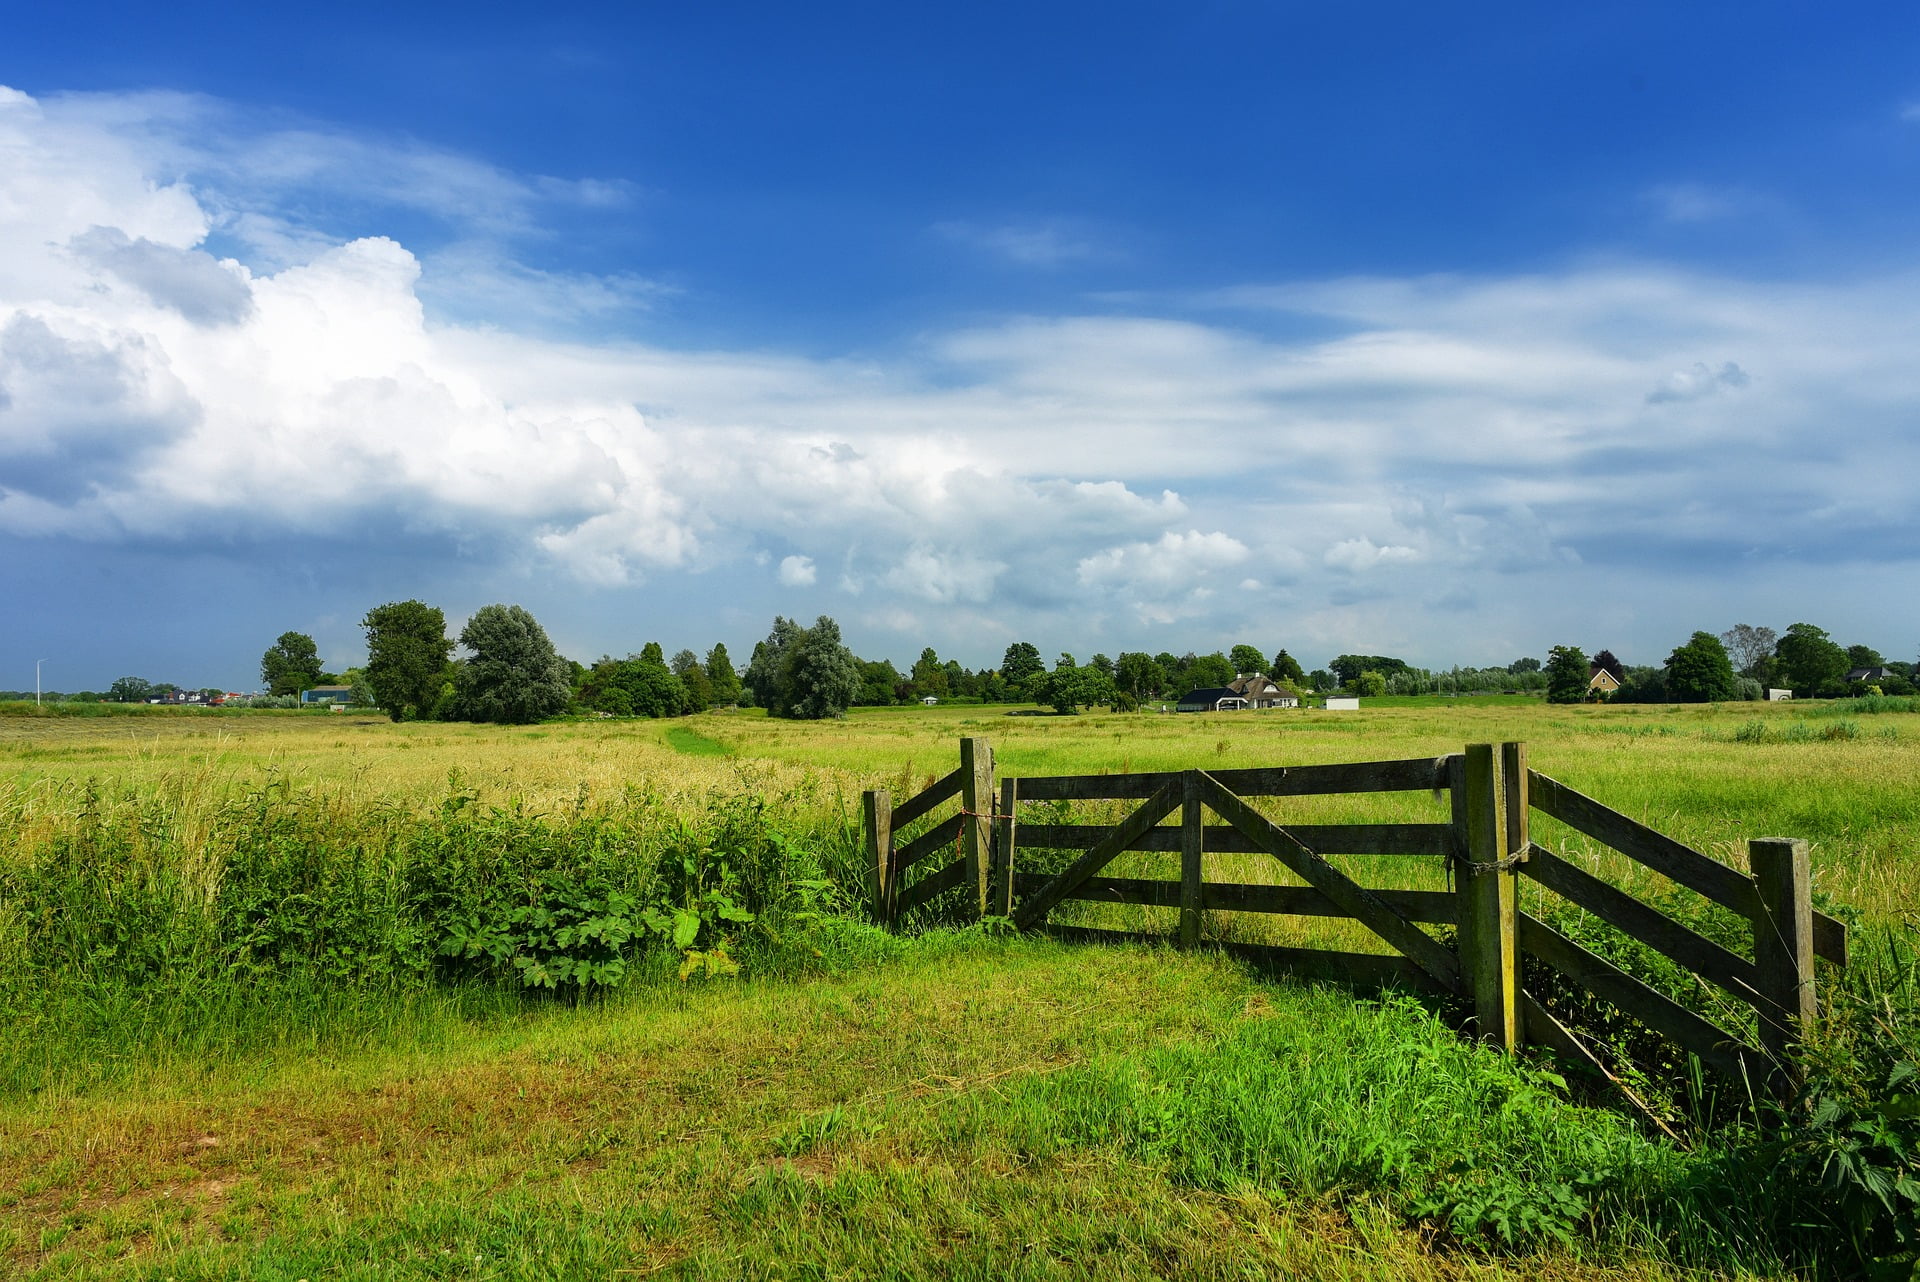 toegang naar een weiland met een houten hek ervoor. Blauwe lucht met wolken erboven.